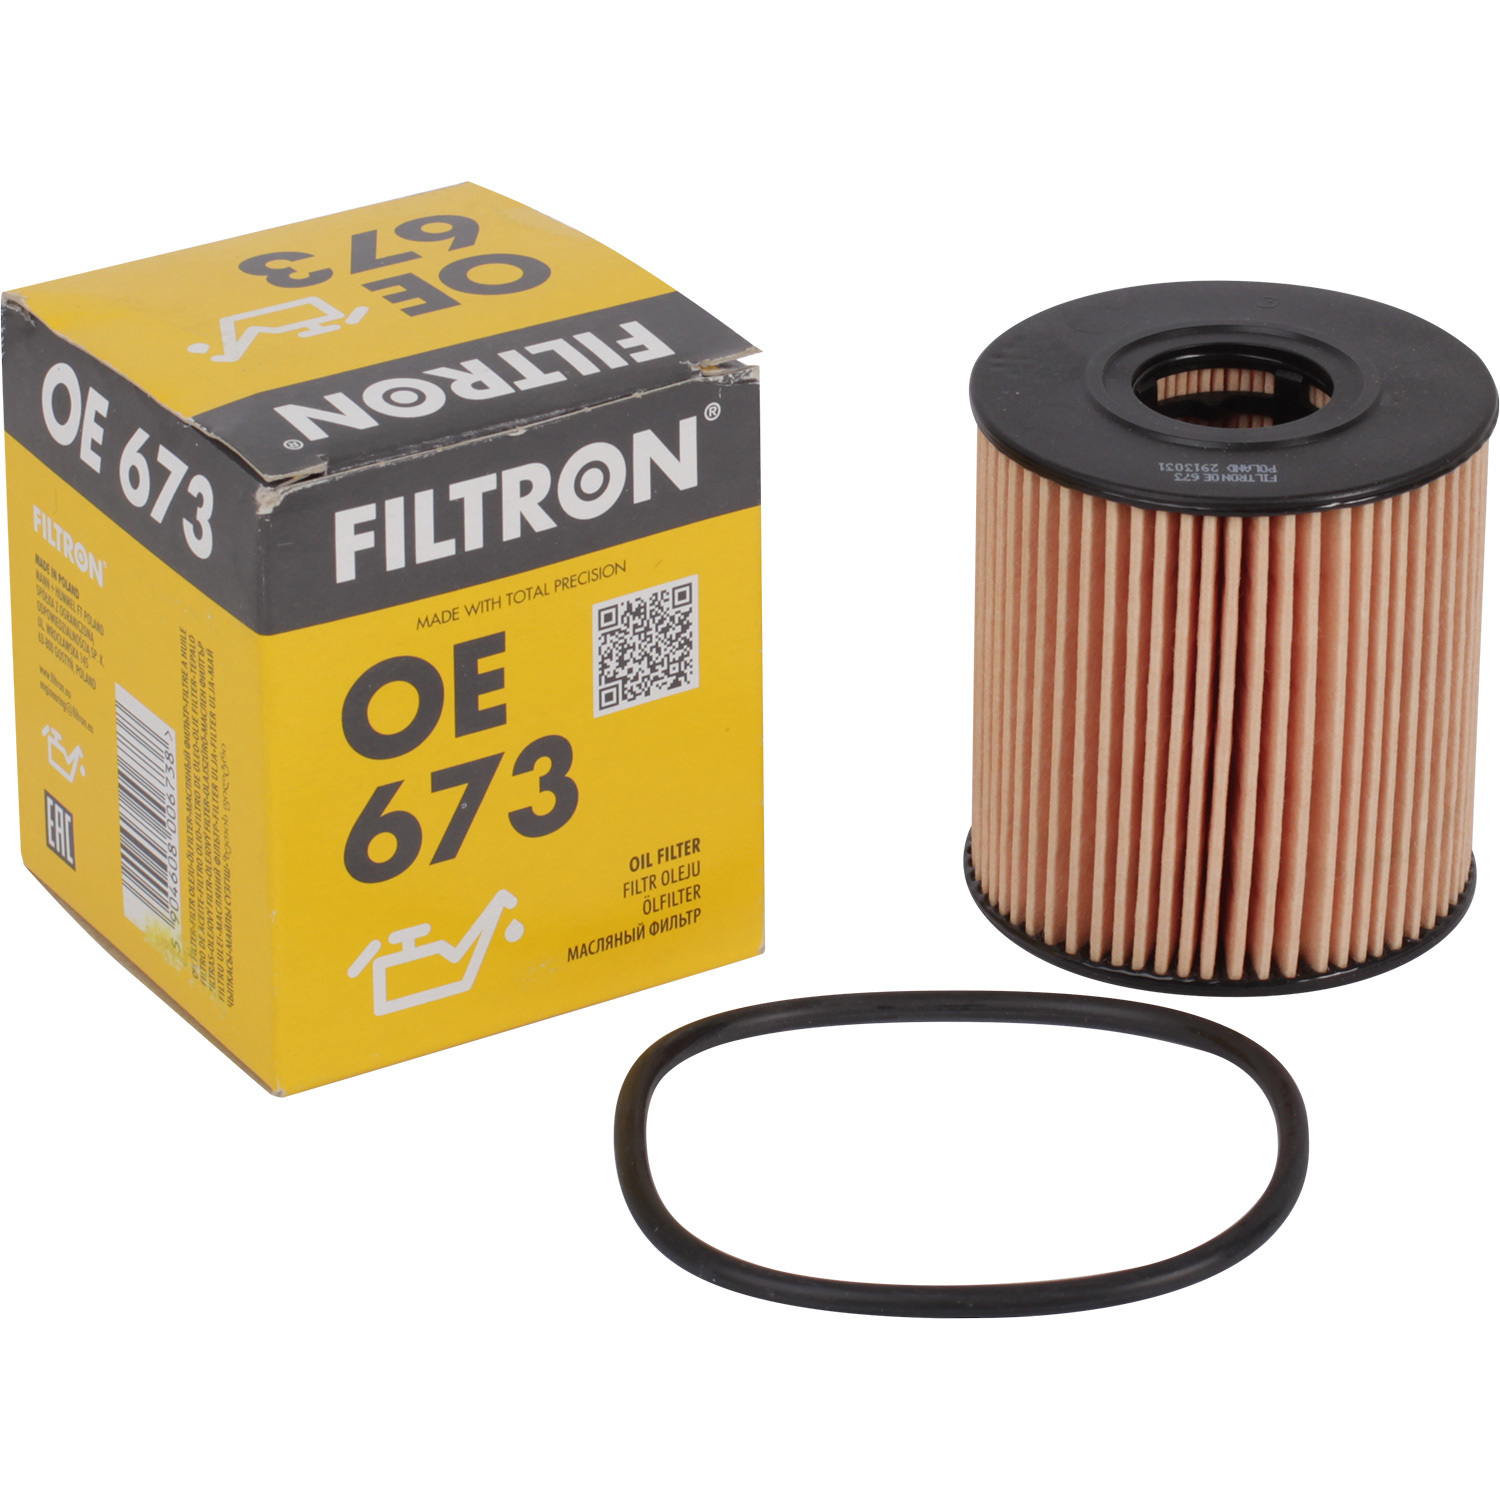 Фильтры Filtron Фильтр масляный Filtron OE673 фильтр масляный filtron oe 671 3 skoda volkswagen audi